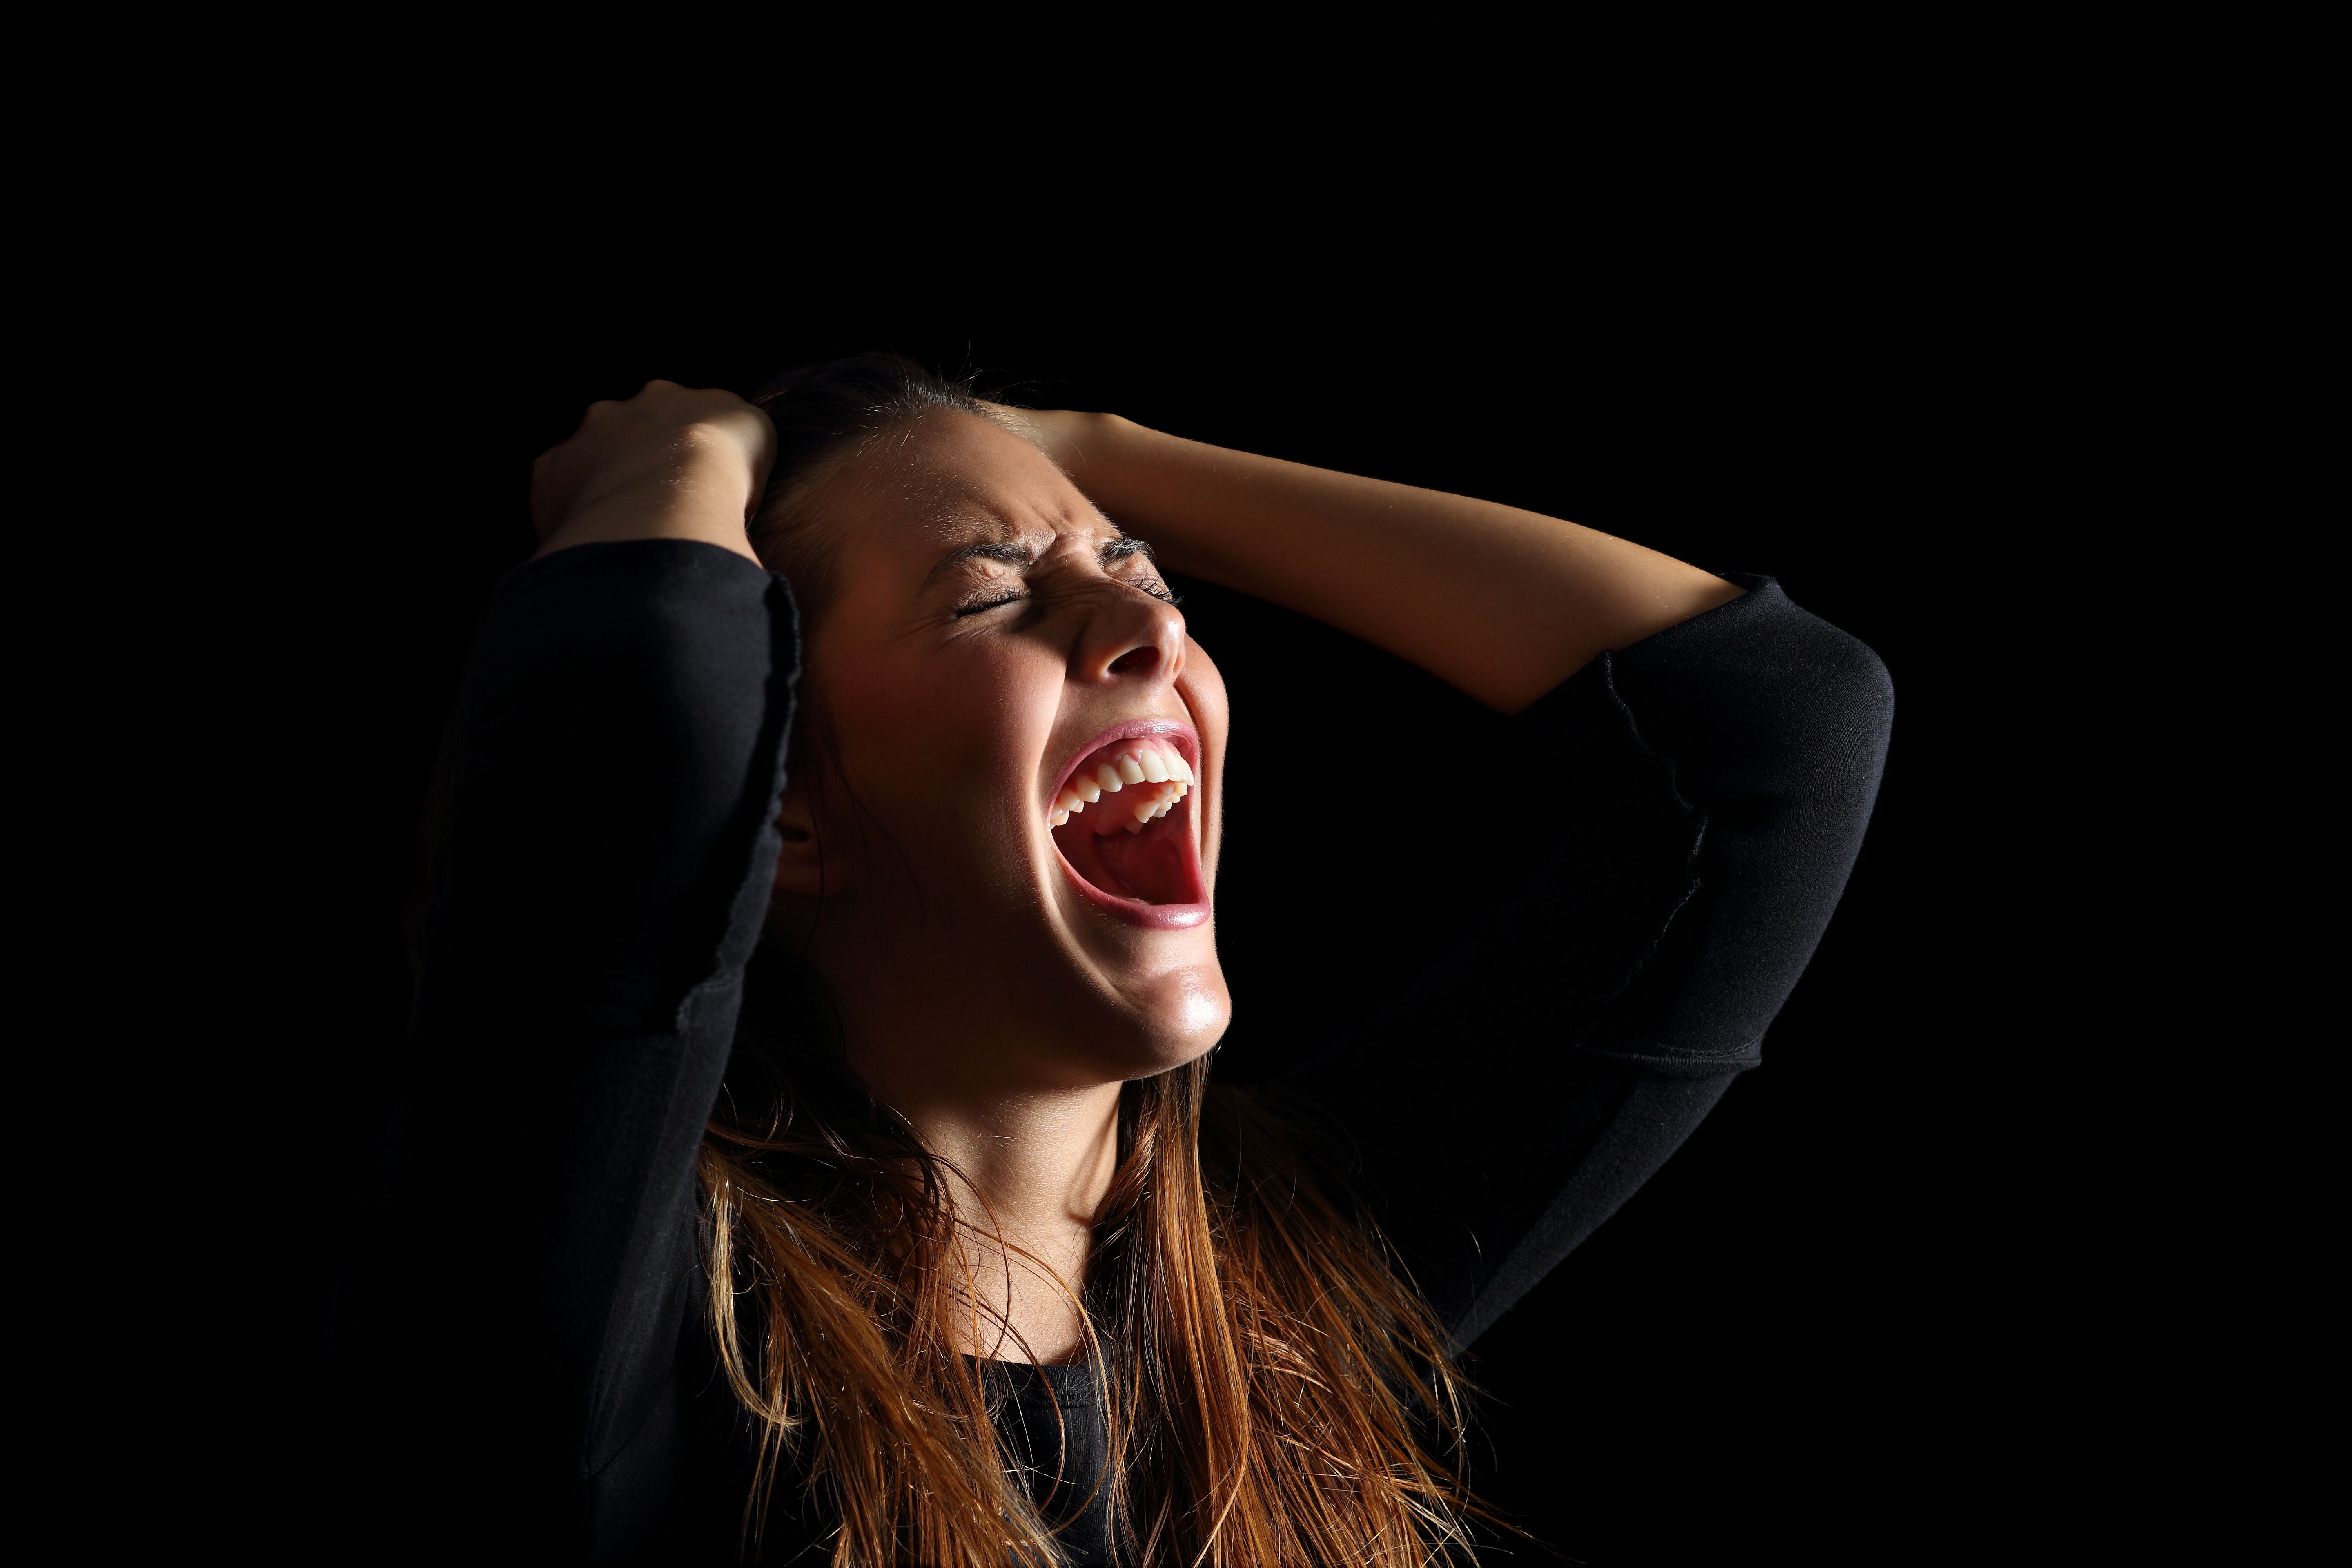 Ein Mädchen schreit, während es sich die Haare hält. | Quelle: Getty Images